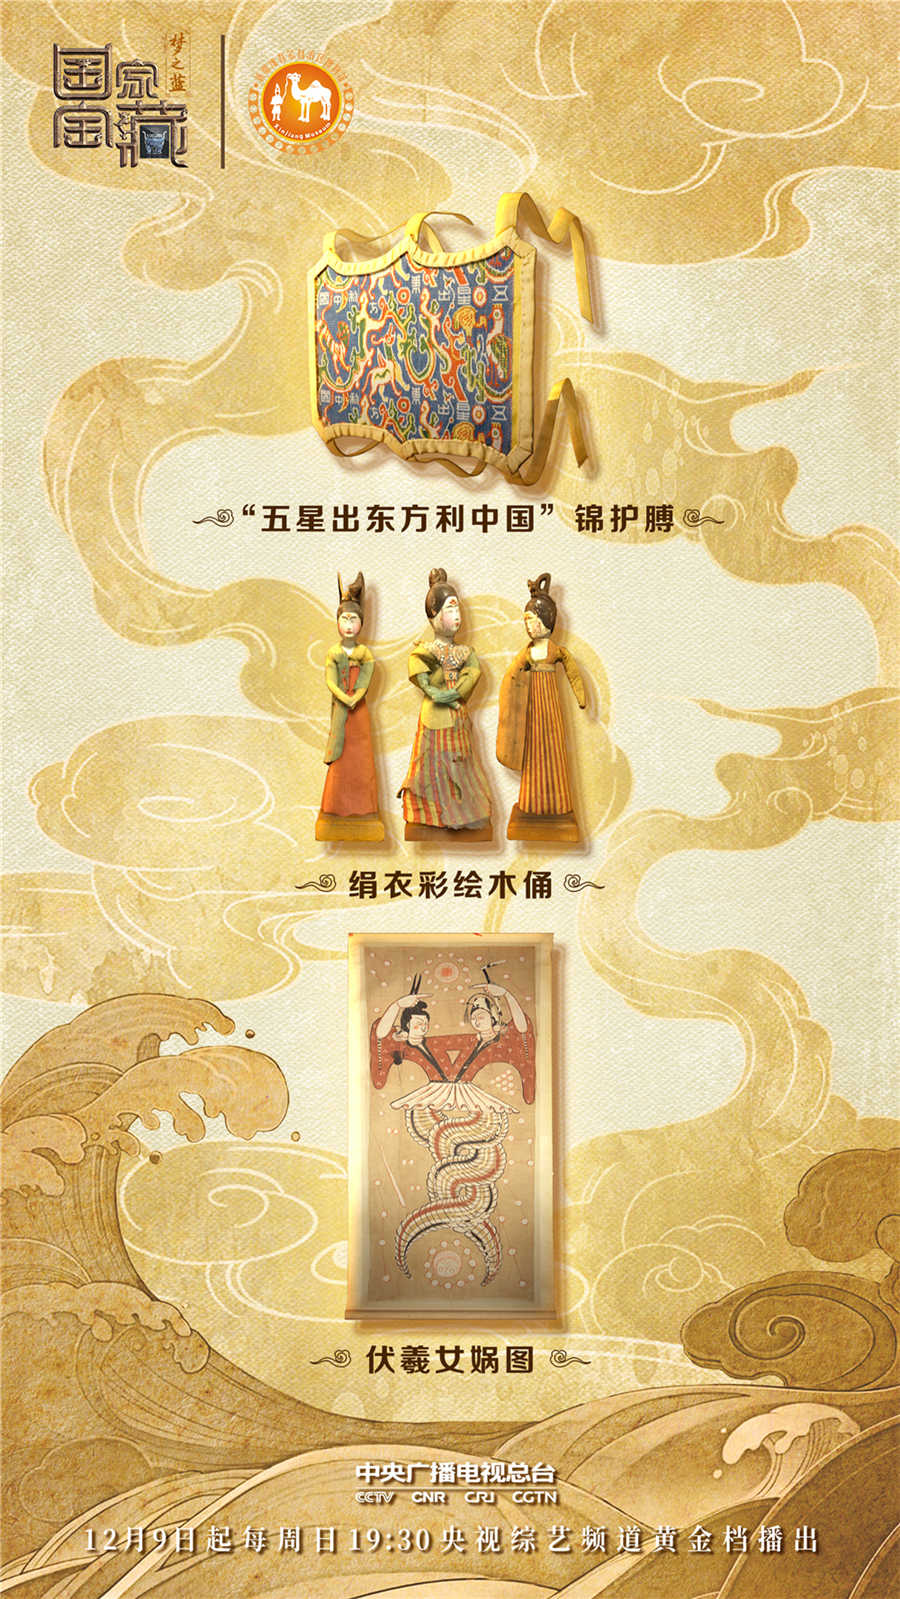 圖：“五星出東方利中國”錦護膊、絹衣彩繪木俑、伏羲女媧圖。